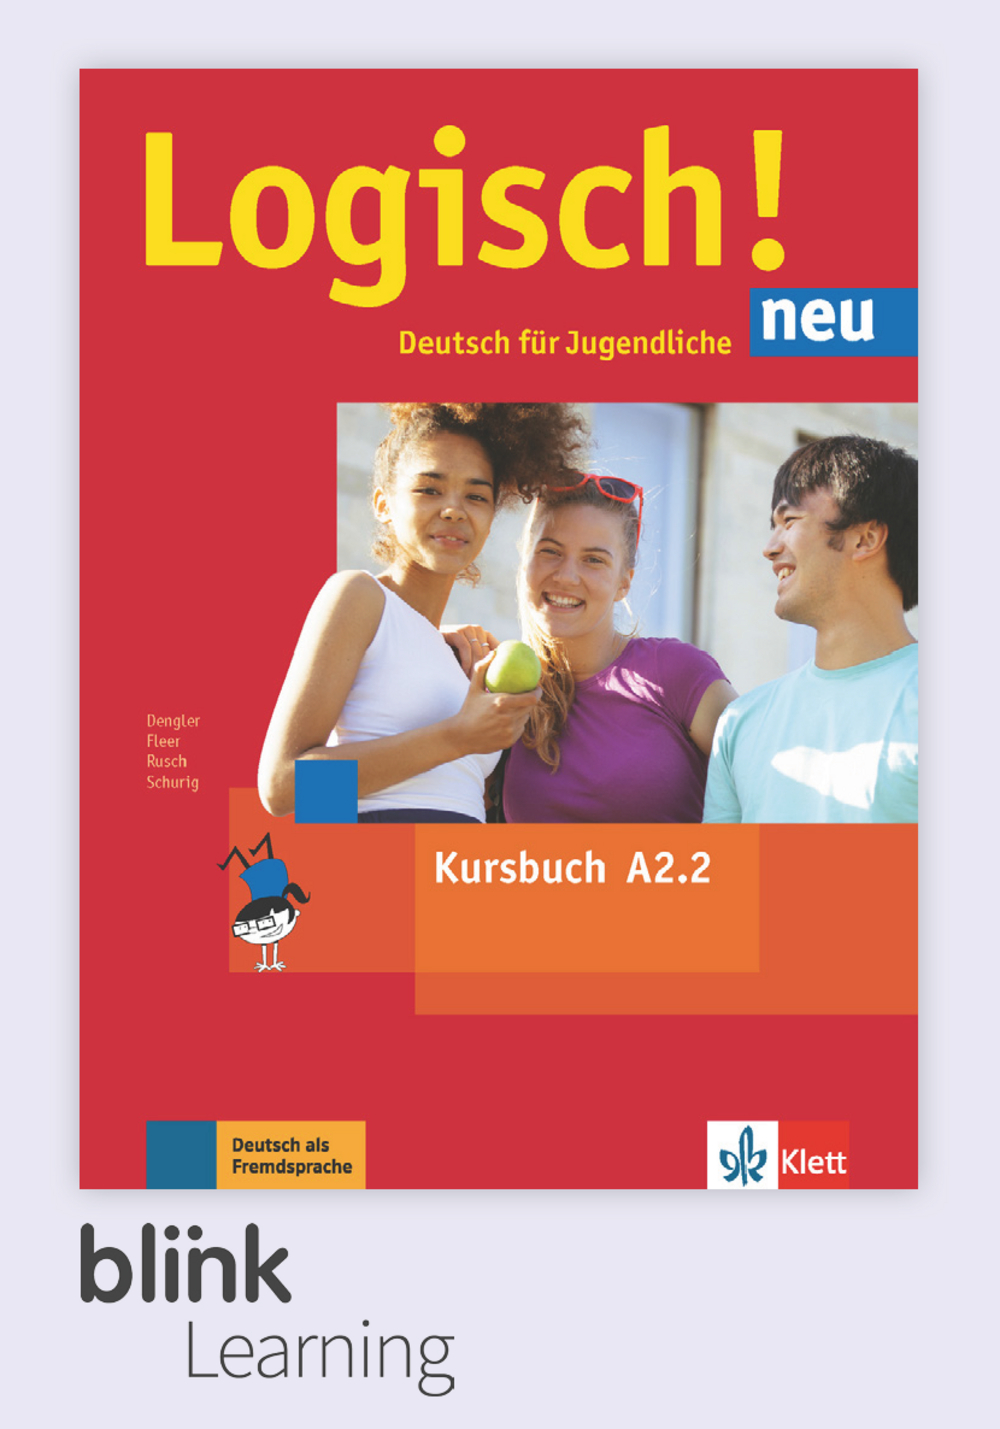 Logisch! neu A2.2 Digital Kursbuch fur Unterrichtende / Цифровой учебник для учителя